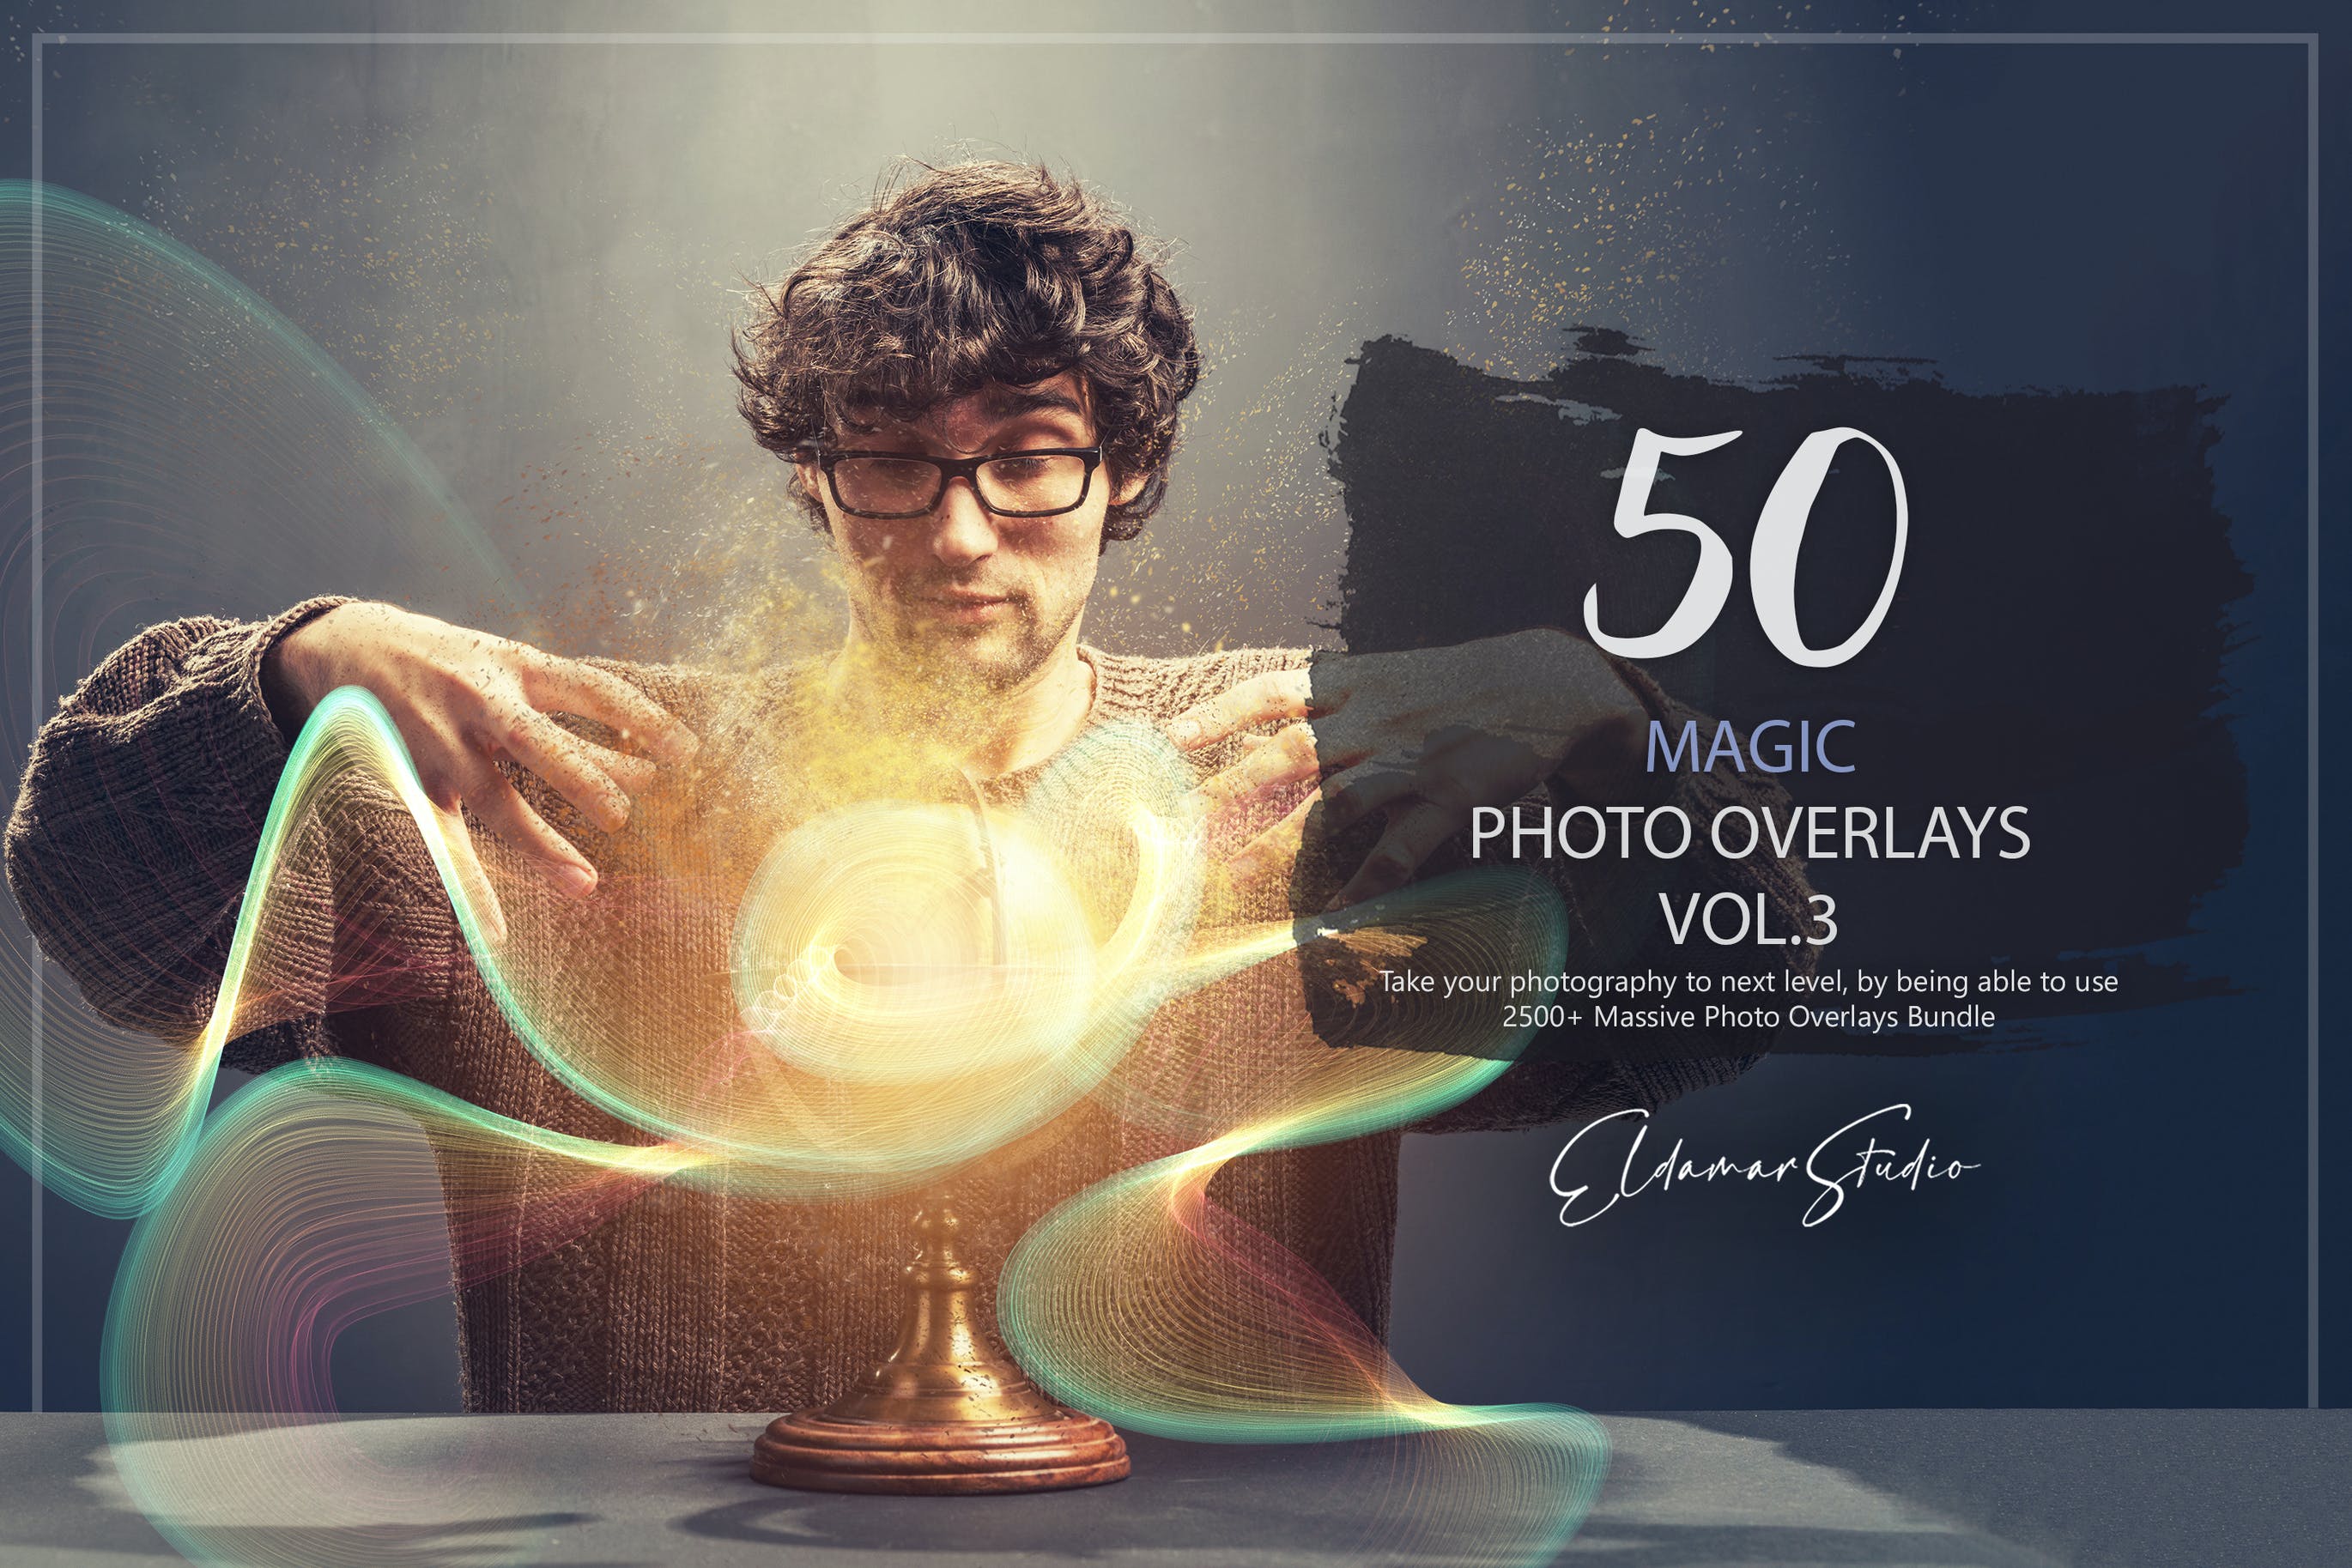 50个魔法彩色波浪线条照片叠层背景素材v3 50 Magic Photo Overlays – Vol. 3 图片素材 第1张